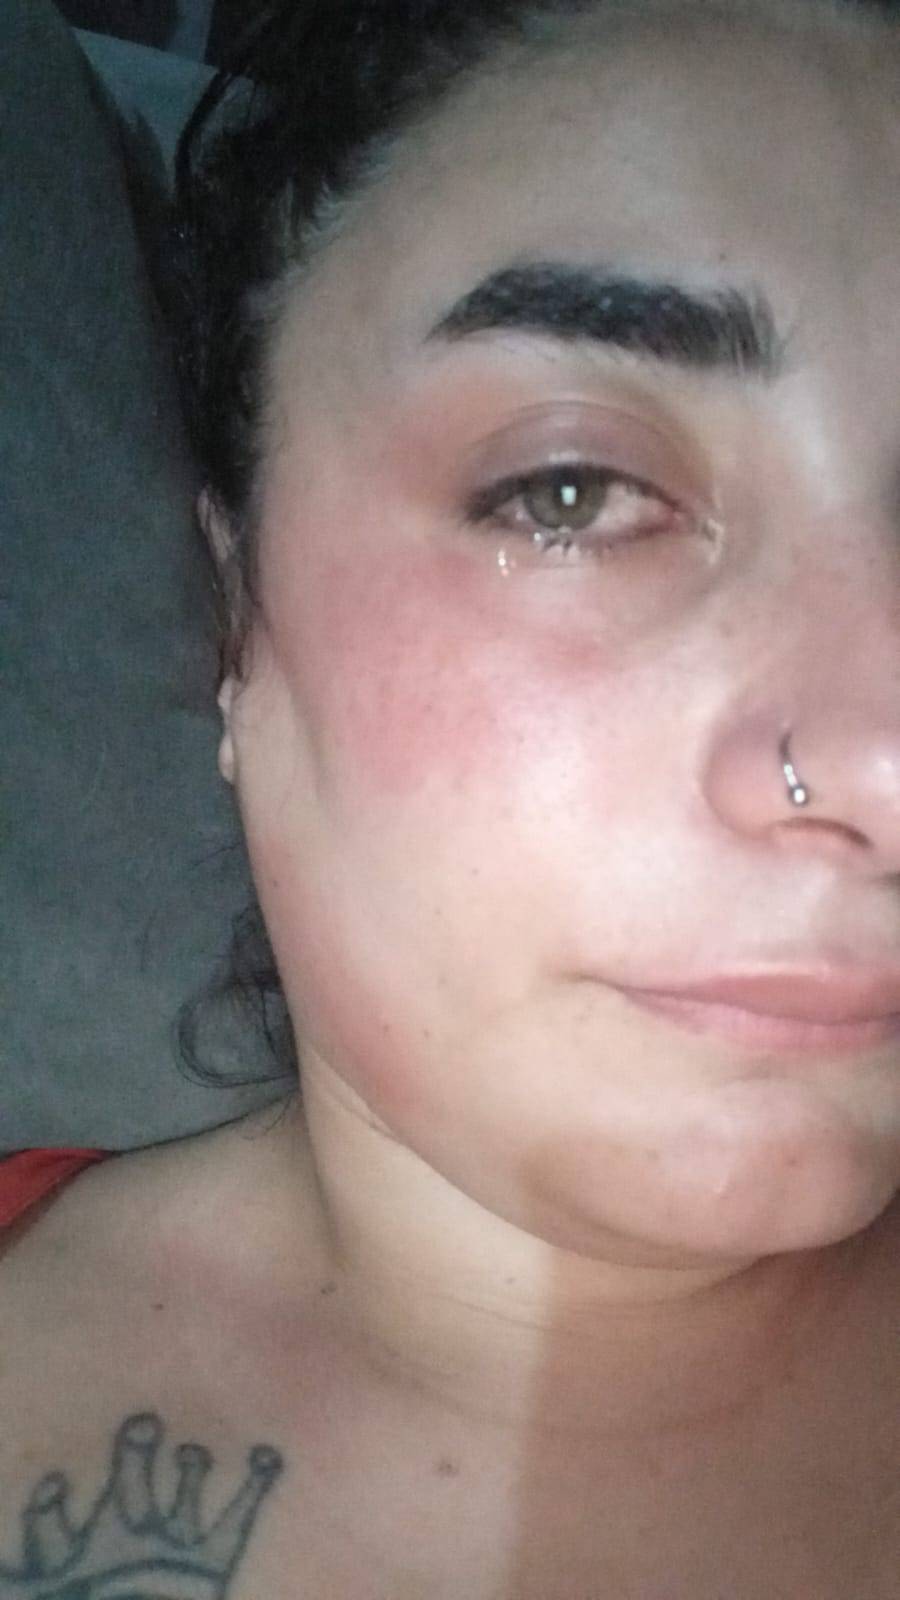 İstanbul Teksas'a döndü dedirten olay: Köpeğiyle markete girmek isteyen hamile kadına saldırı: Bebeğini kaybetti 3